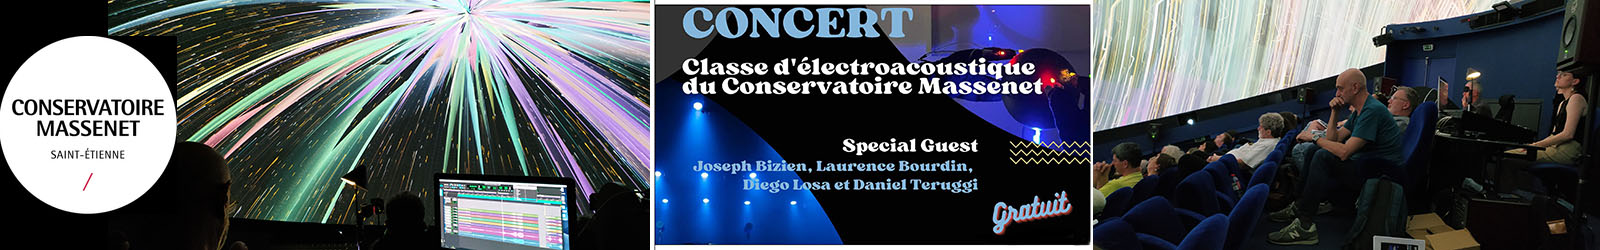 23-06 Bandeau concert